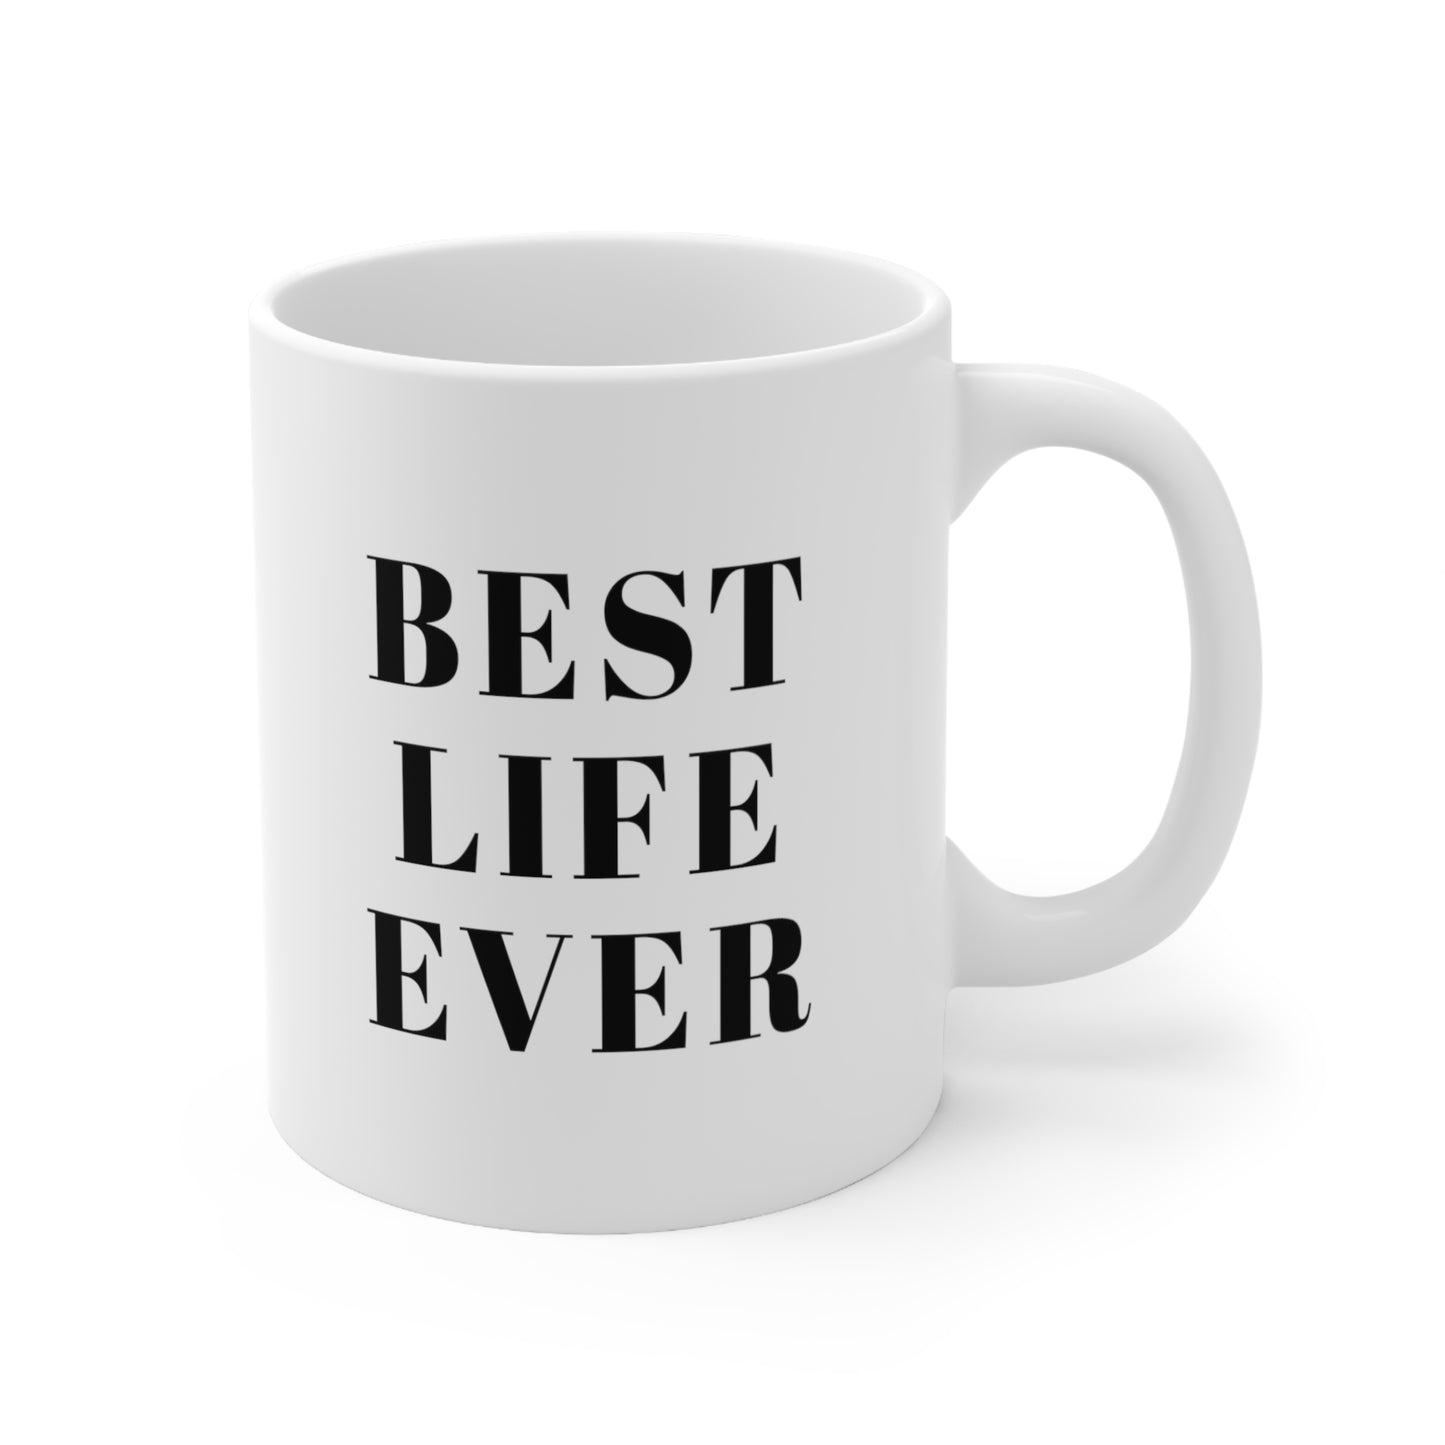 Best Life Ever Coffee Mug 11oz